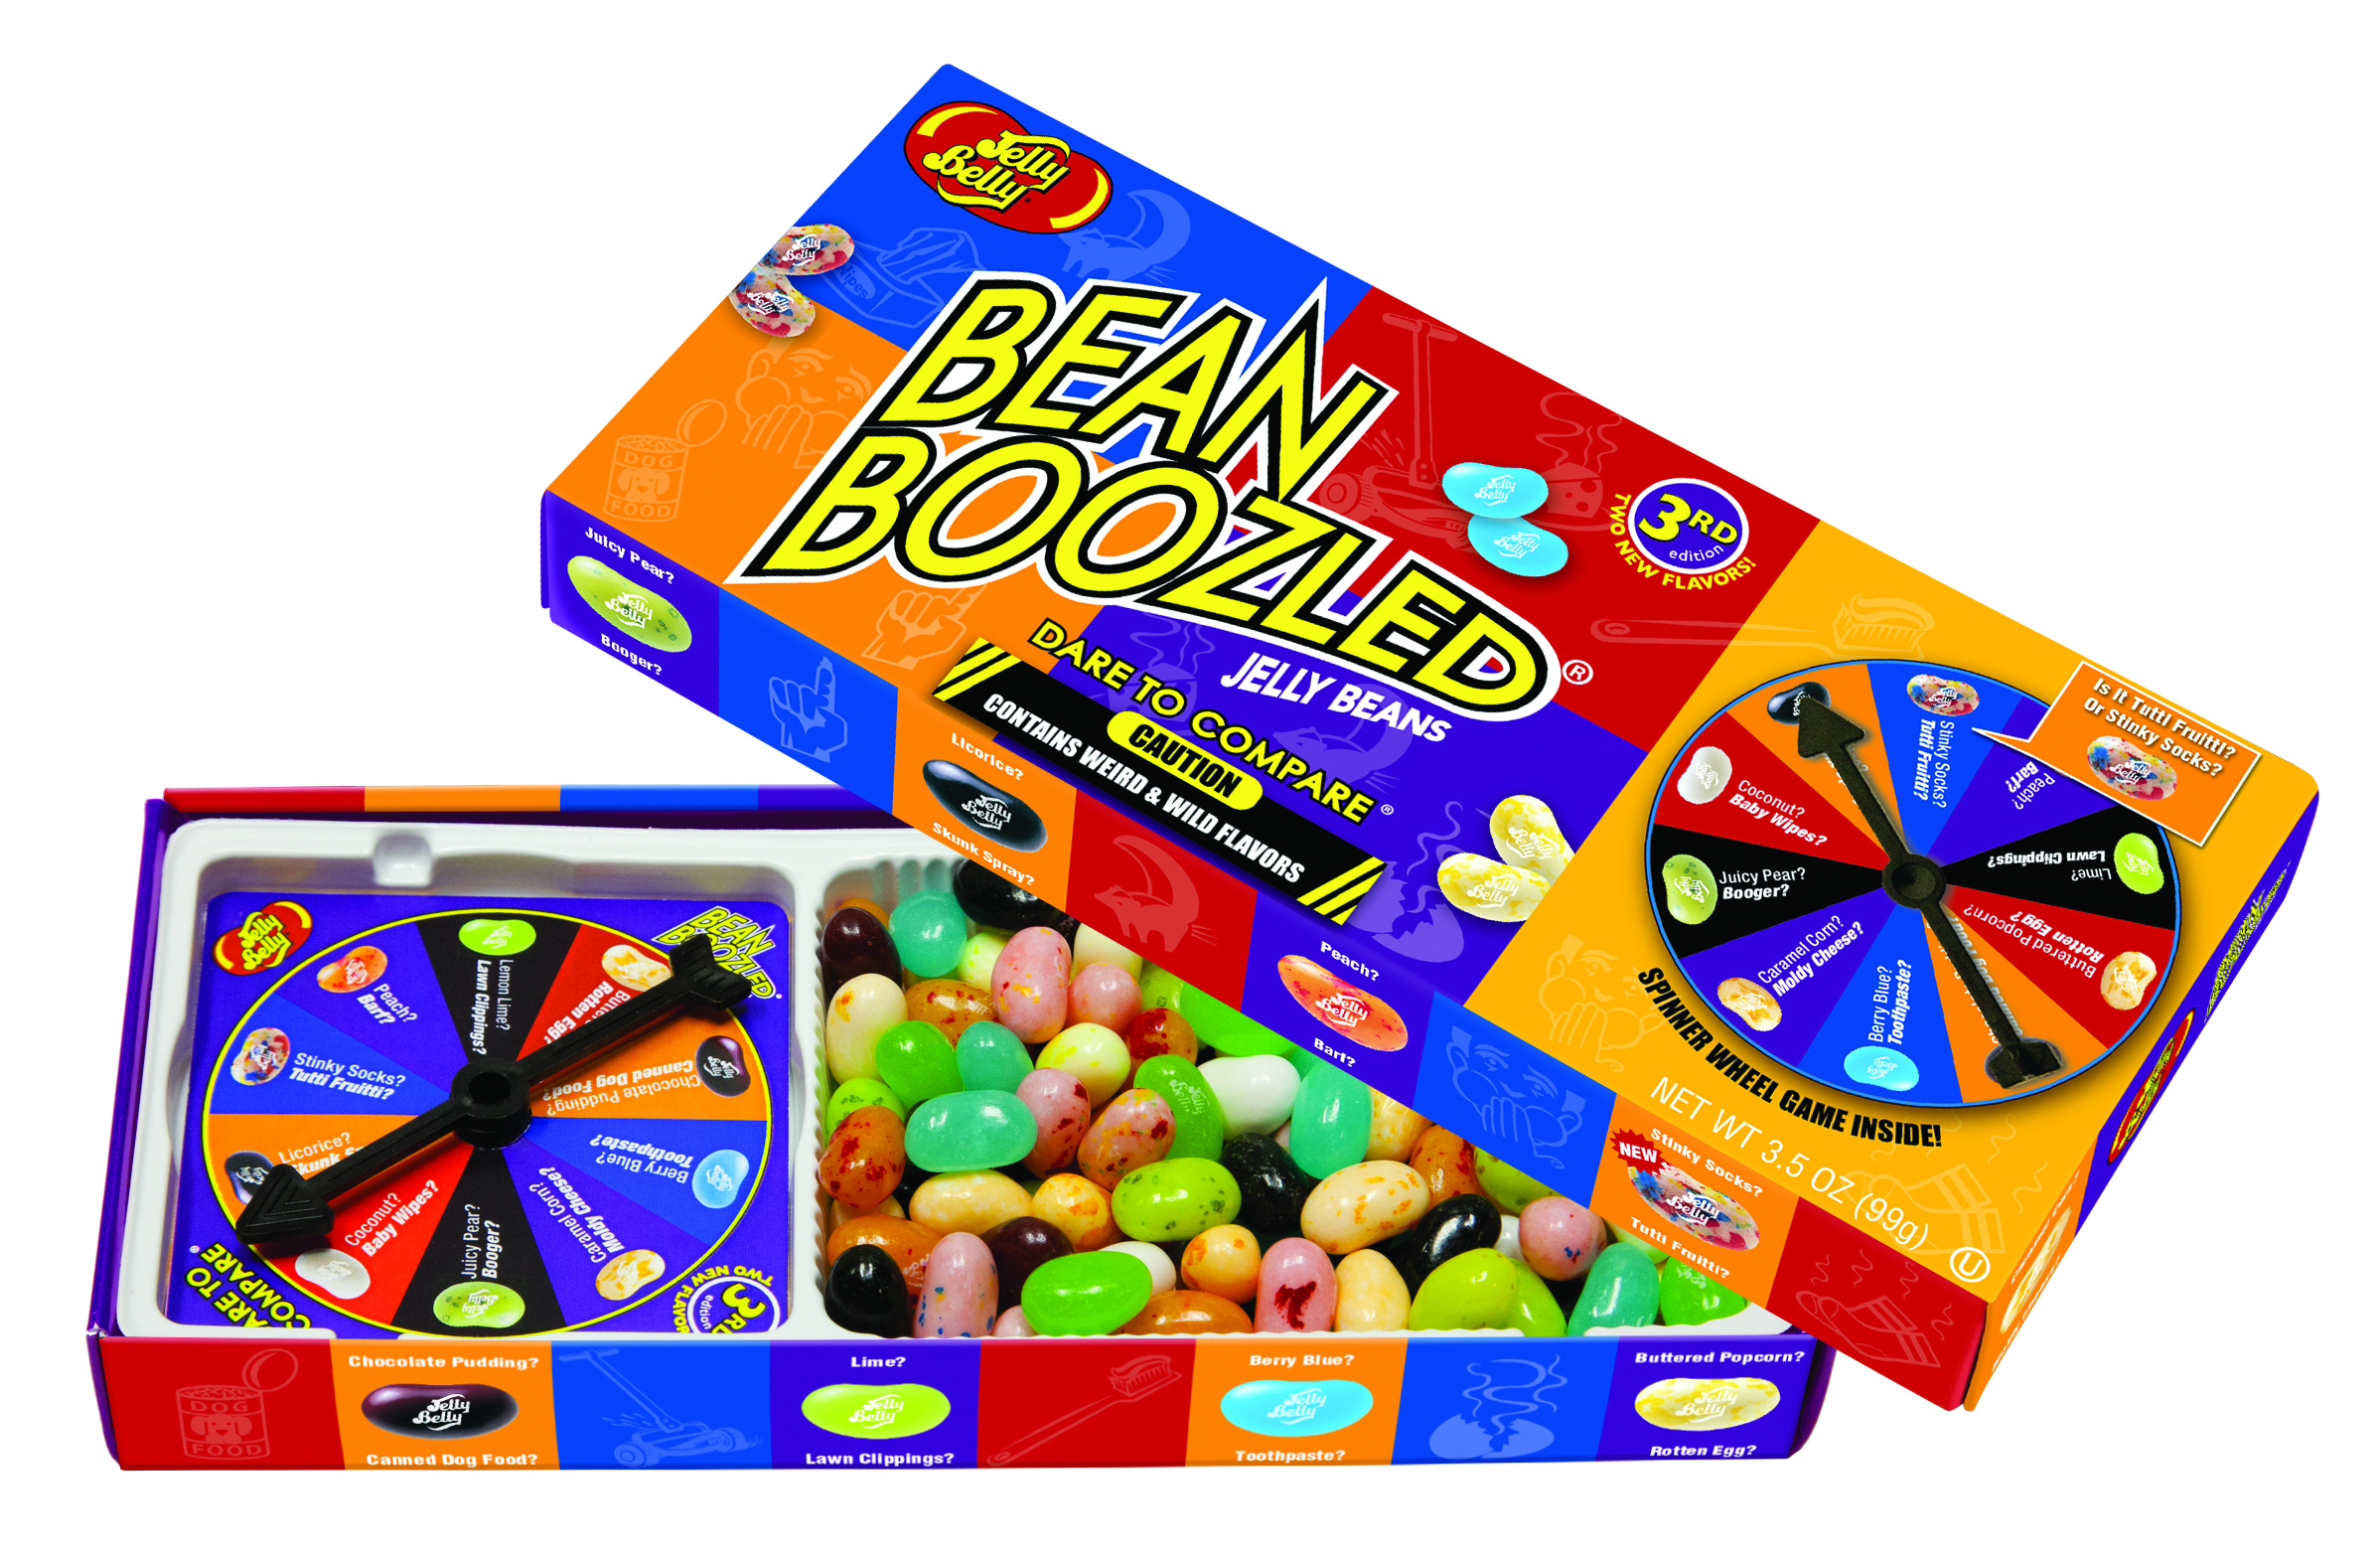 Beanboozled Jelly Beans Spinner Gift Box,Ikea Bookshelf Bed Hack